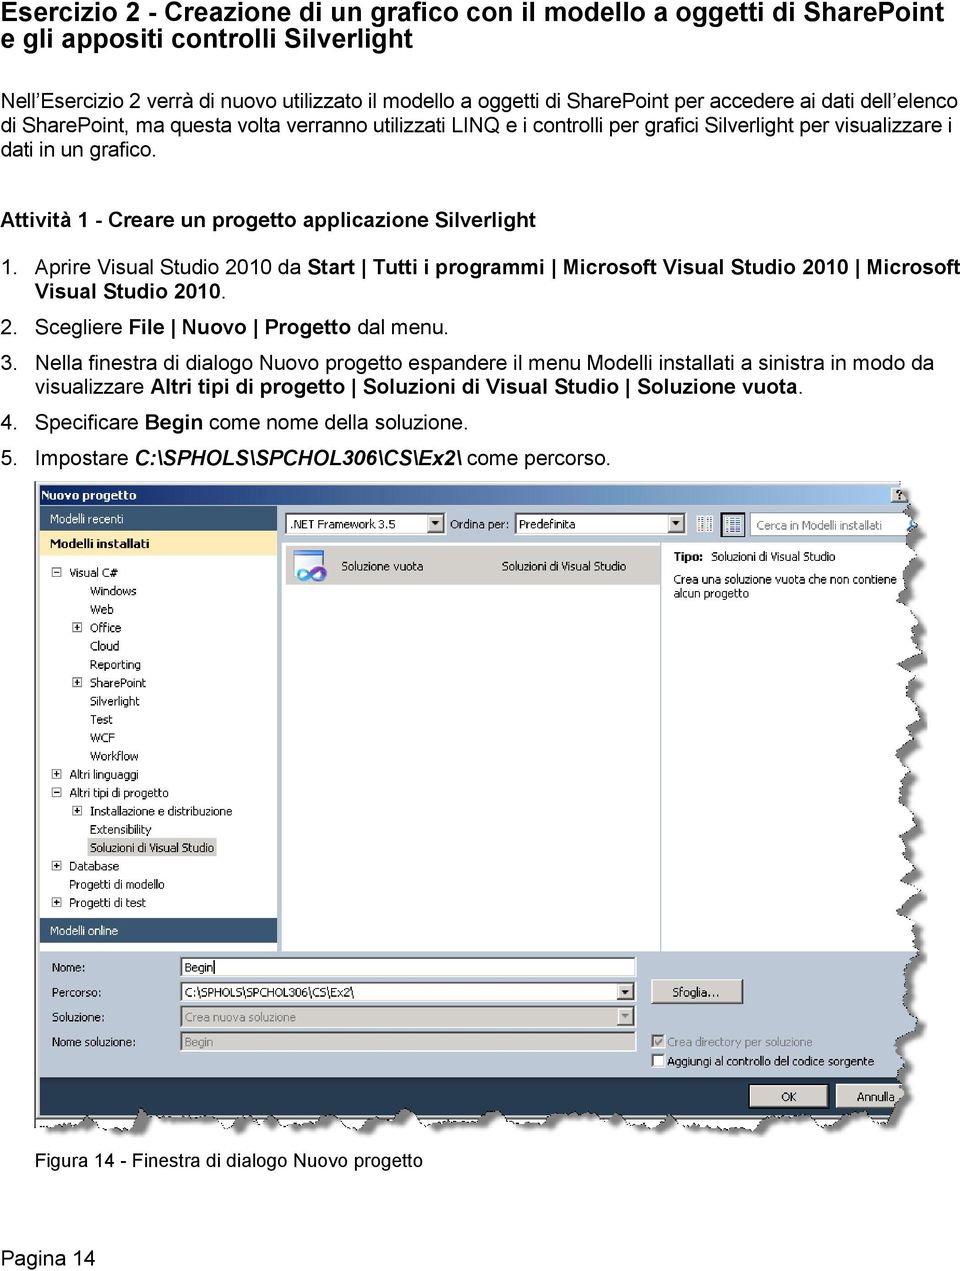 Attività 1 - Creare un progetto applicazione Silverlight 1. Aprire Visual Studio 2010 da Start Tutti i programmi Microsoft Visual Studio 2010 Microsoft Visual Studio 2010. 2. Scegliere File Nuovo Progetto dal menu.